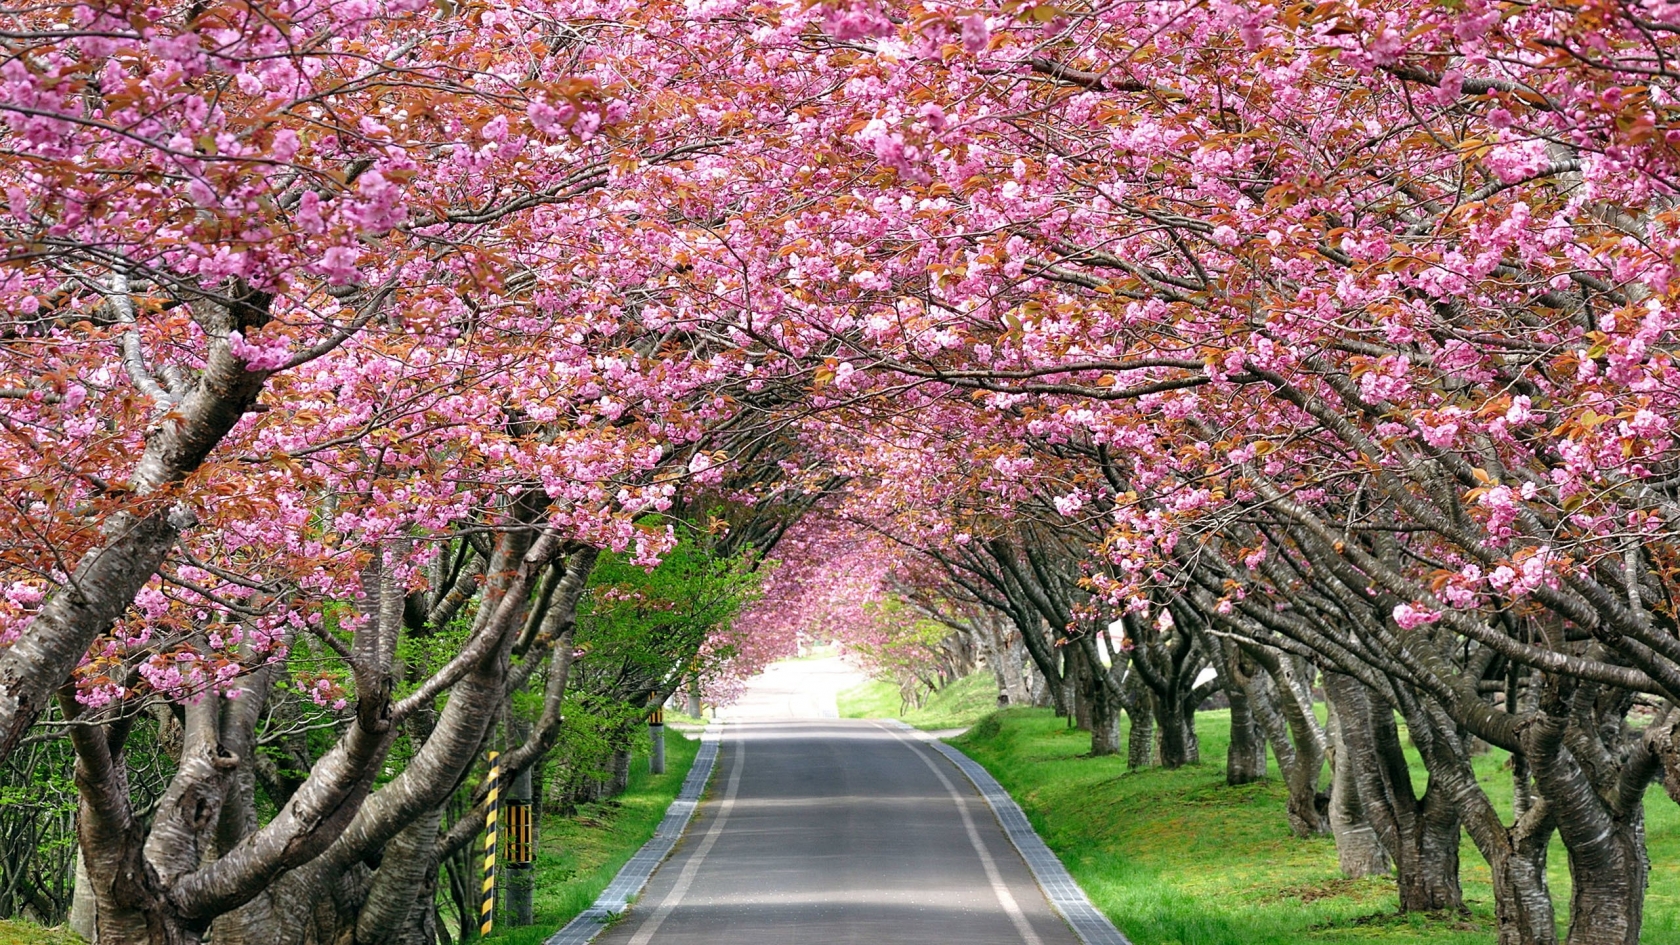 Splendid Cherry Blossom for 1680 x 945 HDTV resolution